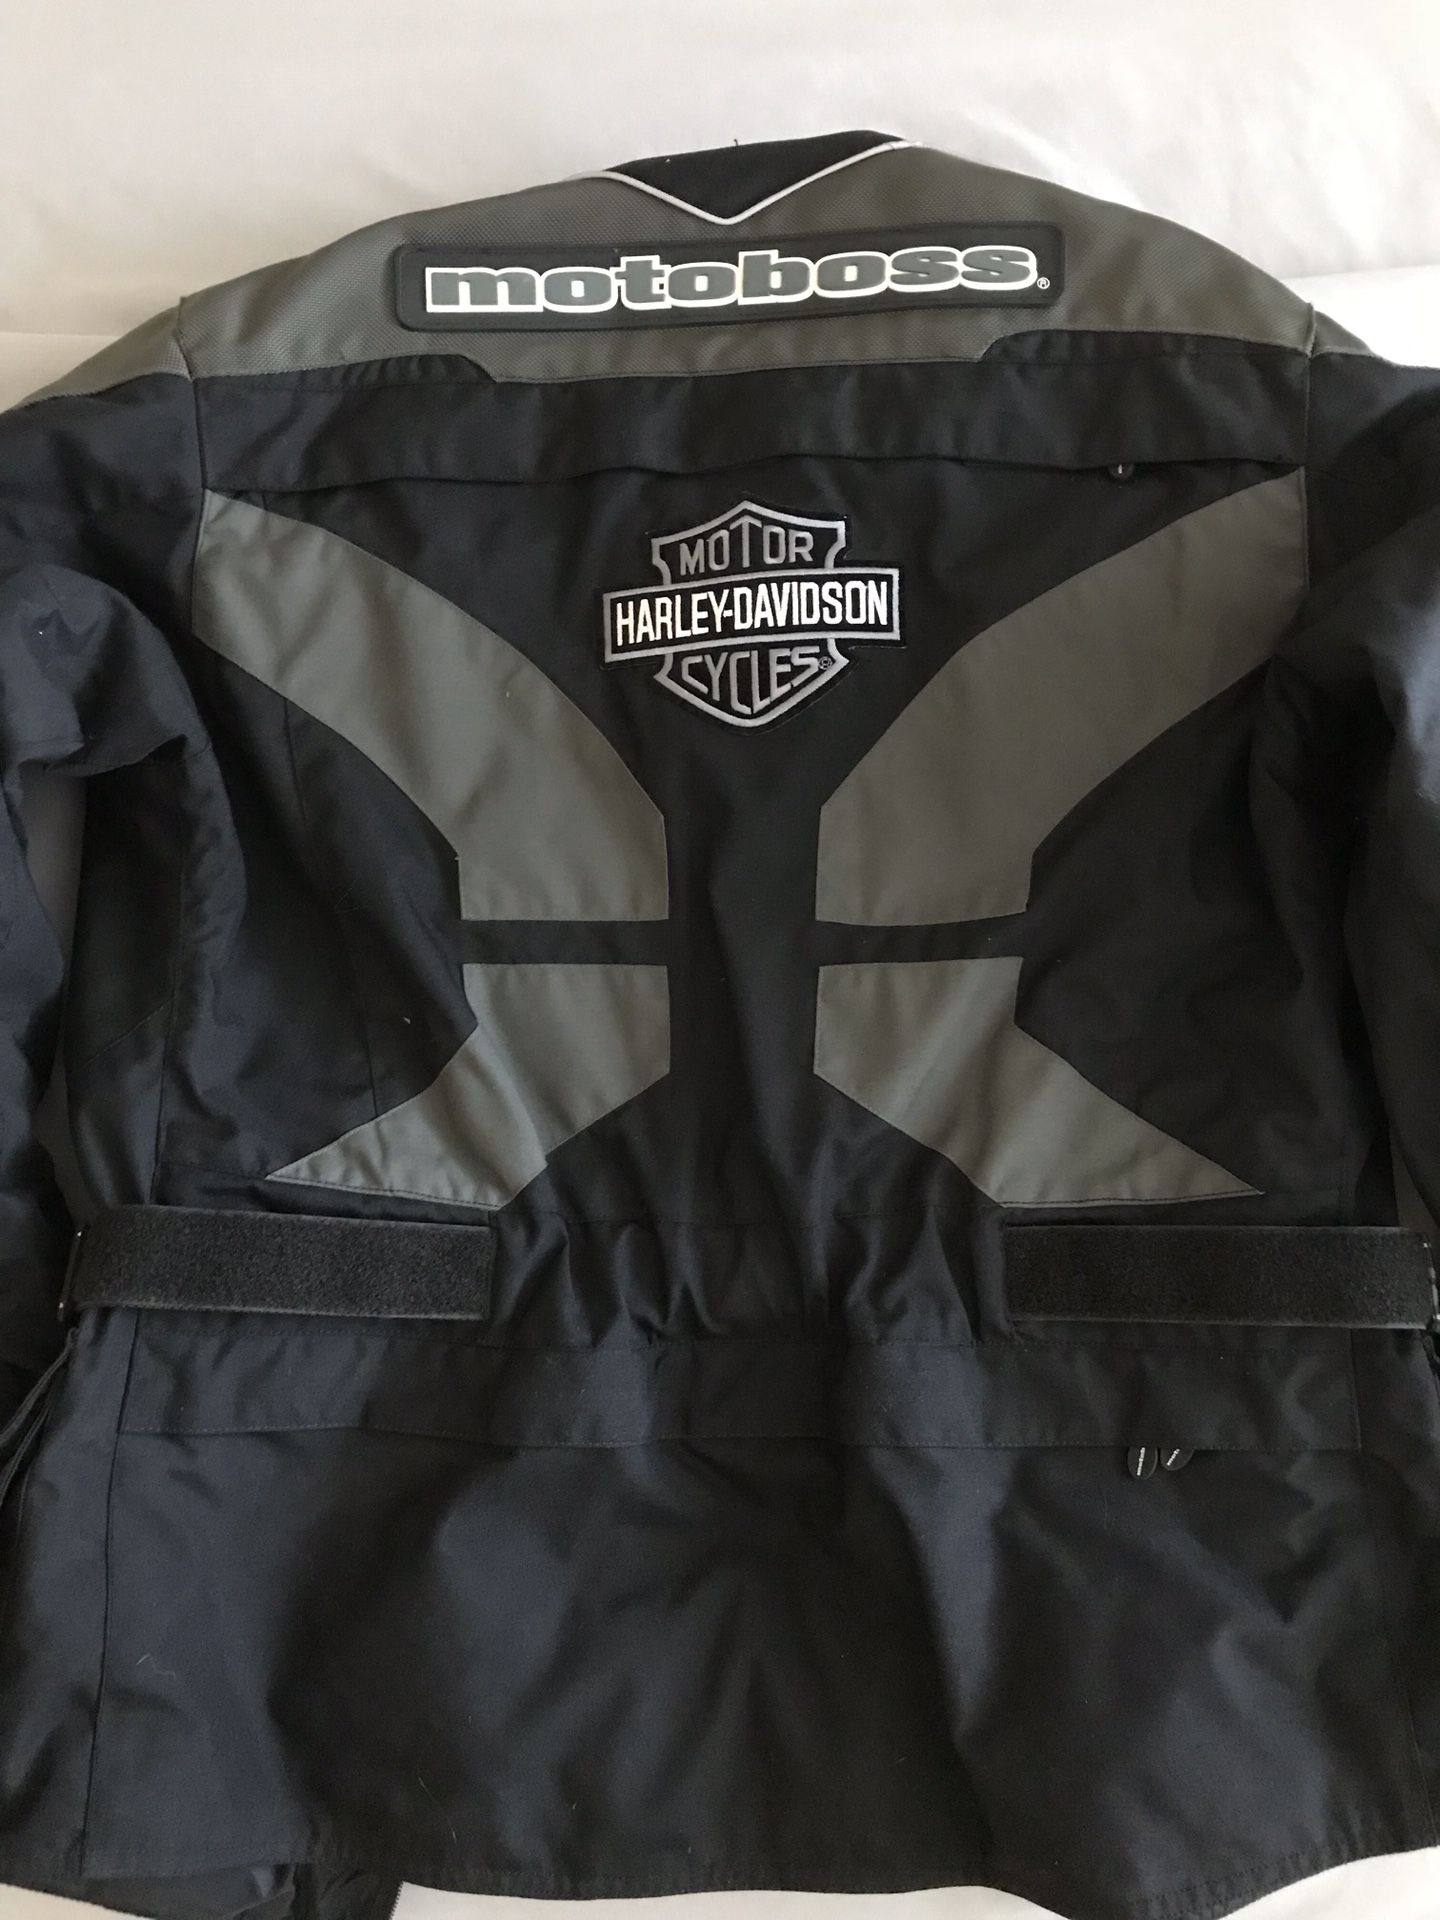 Men’s Motoboss motorcycle jacket